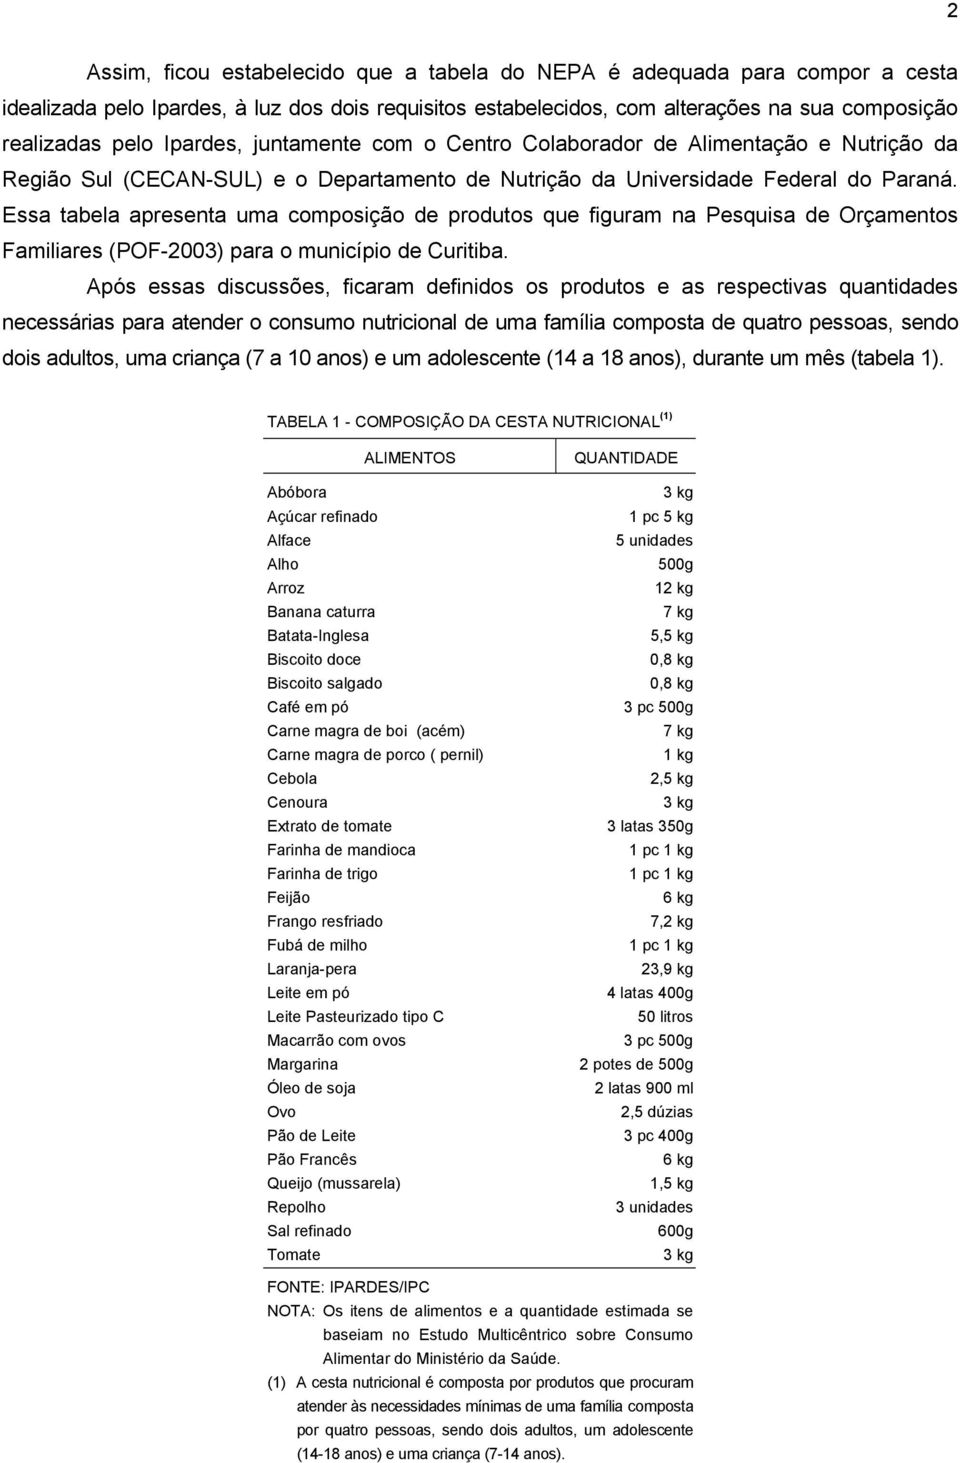 Essa tabela apresenta uma composição de produtos que figuram na Pesquisa de Orçamentos Familiares (POF-2003) para o município de Curitiba.